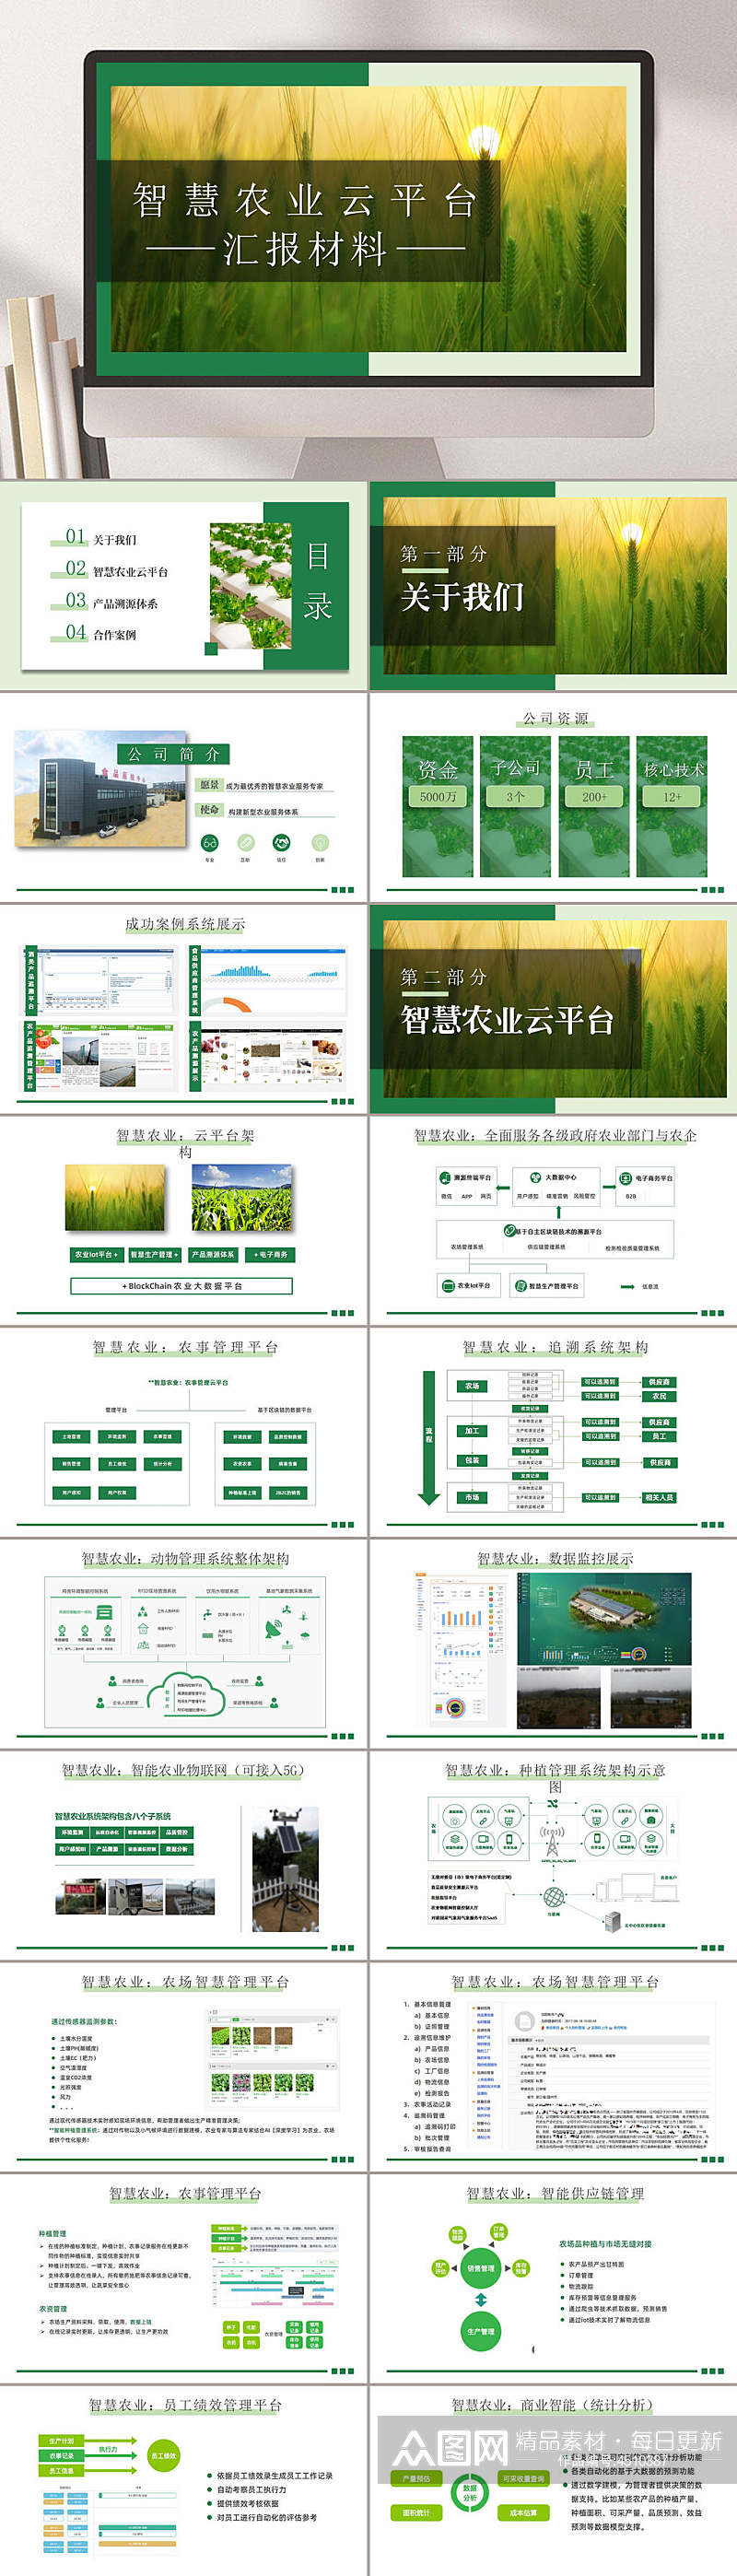 绿色清新智慧农业与产品PPT素材